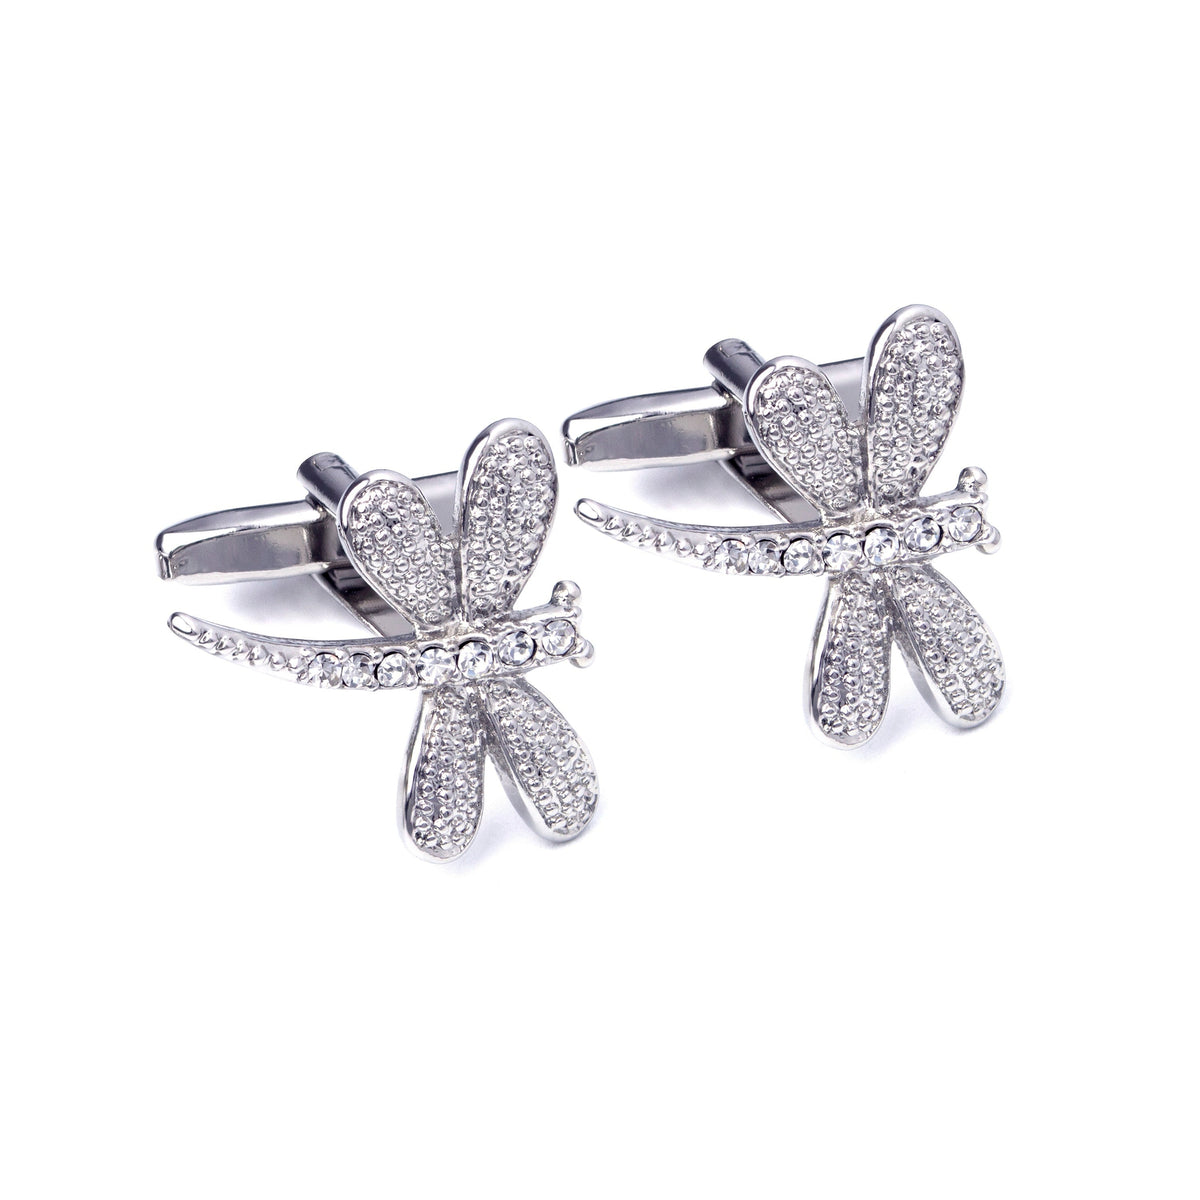 MarZthomson Dragonfly Cufflinks with Clear Crystals M-Cufflinks.com.sg